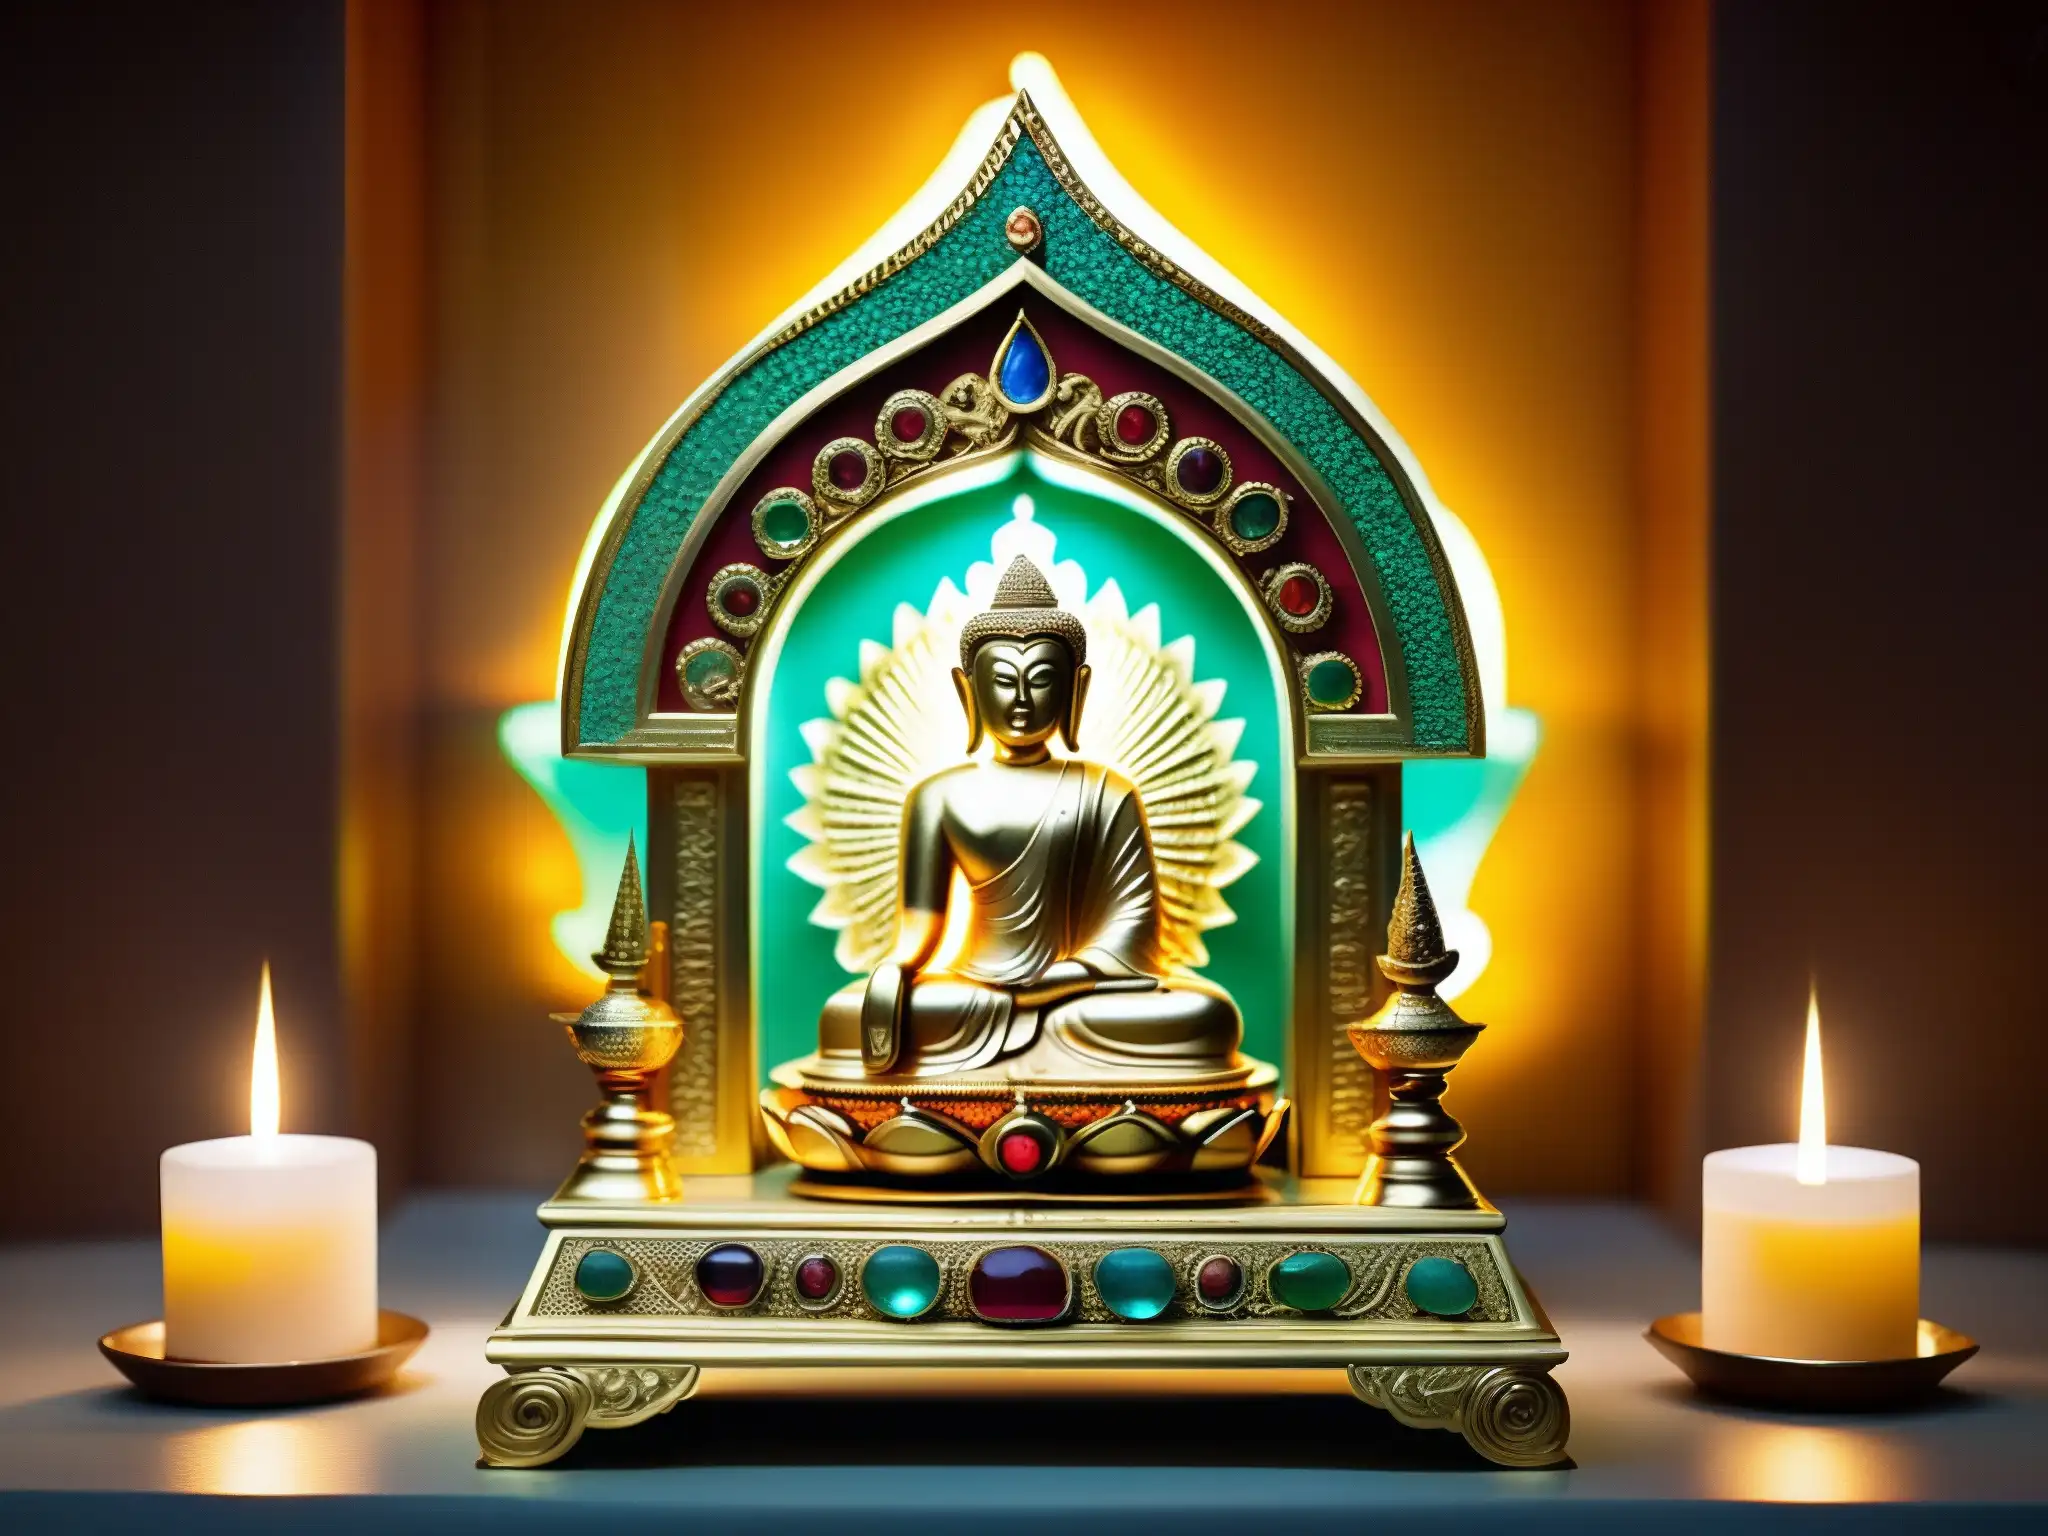 Relicario dorado adornado con gemas y carvings, contiene reliquia sagrada del Himalaya